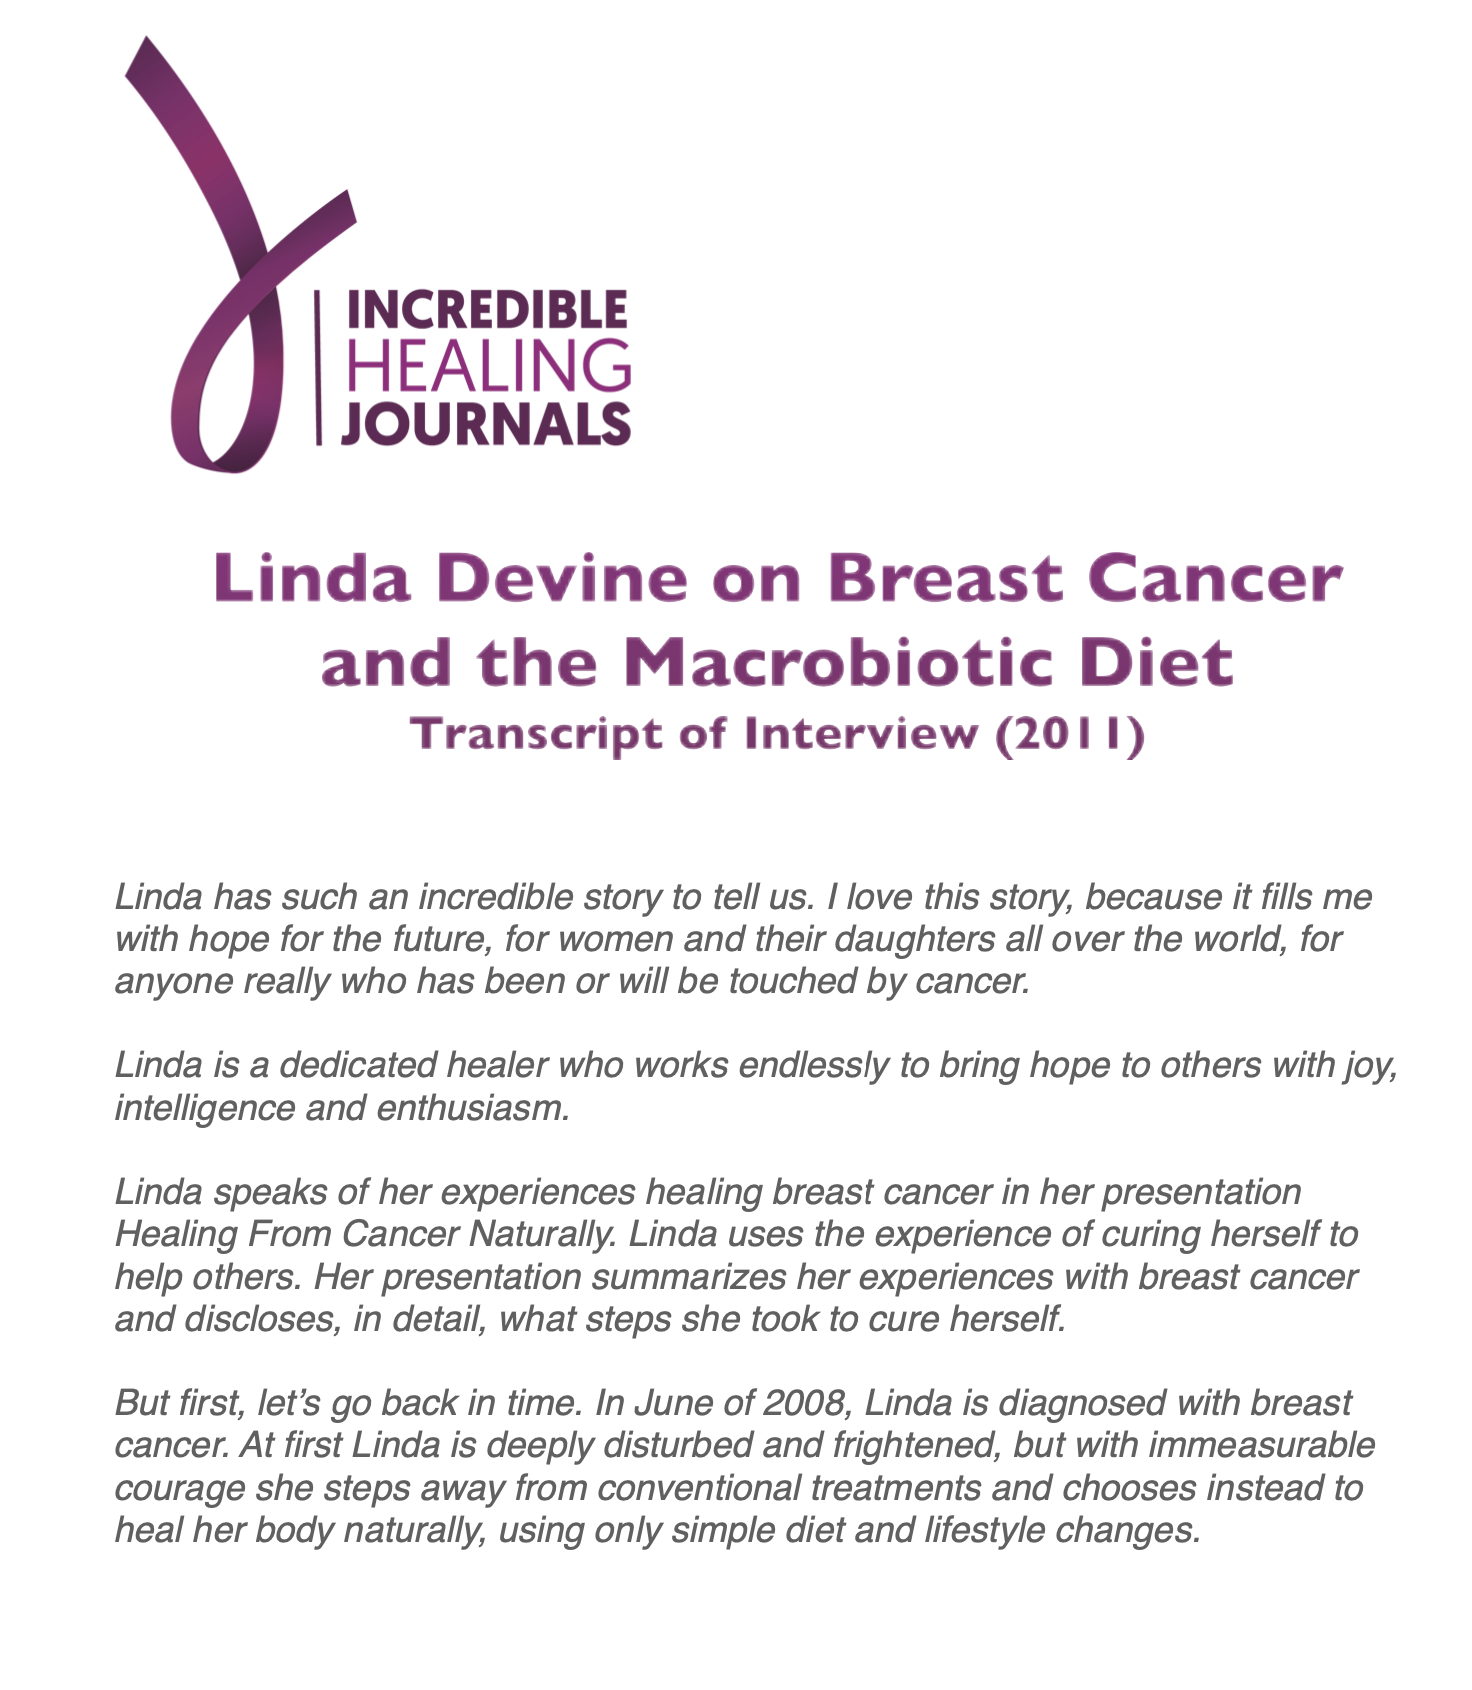 Linda Devine on Breast Cancer and Macrobiotic Diet